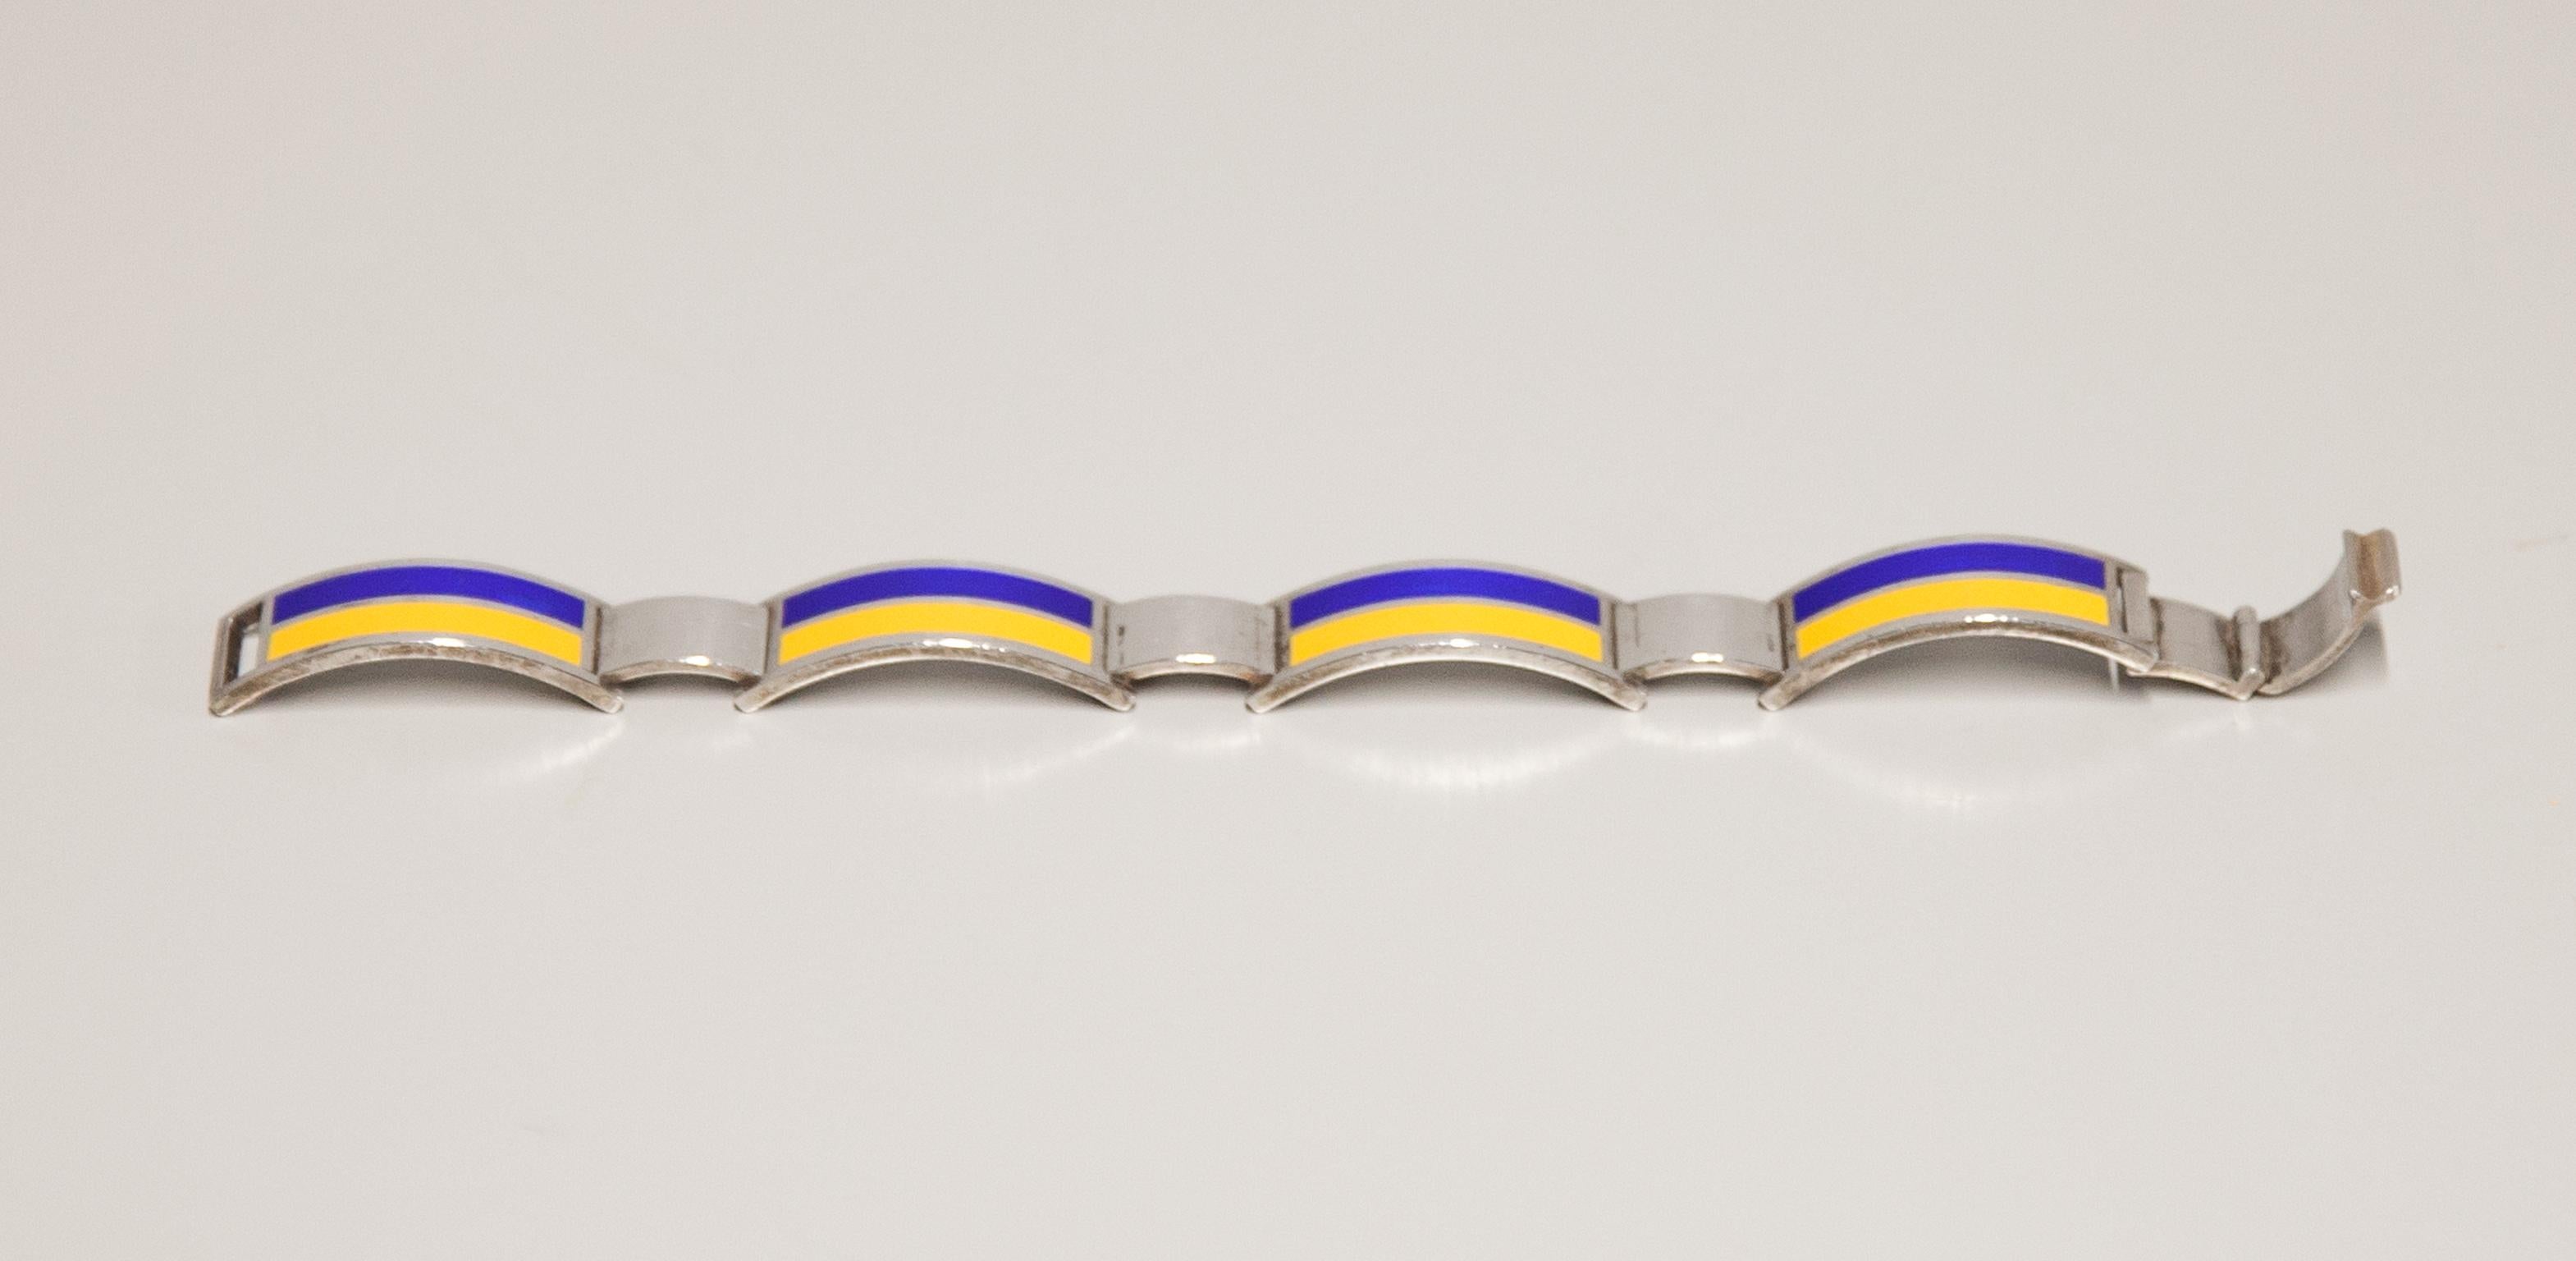 Elegantes Armband aus 925er Sterlingsilber mit blauen und gelben Emaileinschlüssen in Form der ukrainischen Flagge, gestempelt mit Gucci und der Silbermarke und entworfen von Antonio Fallaci.